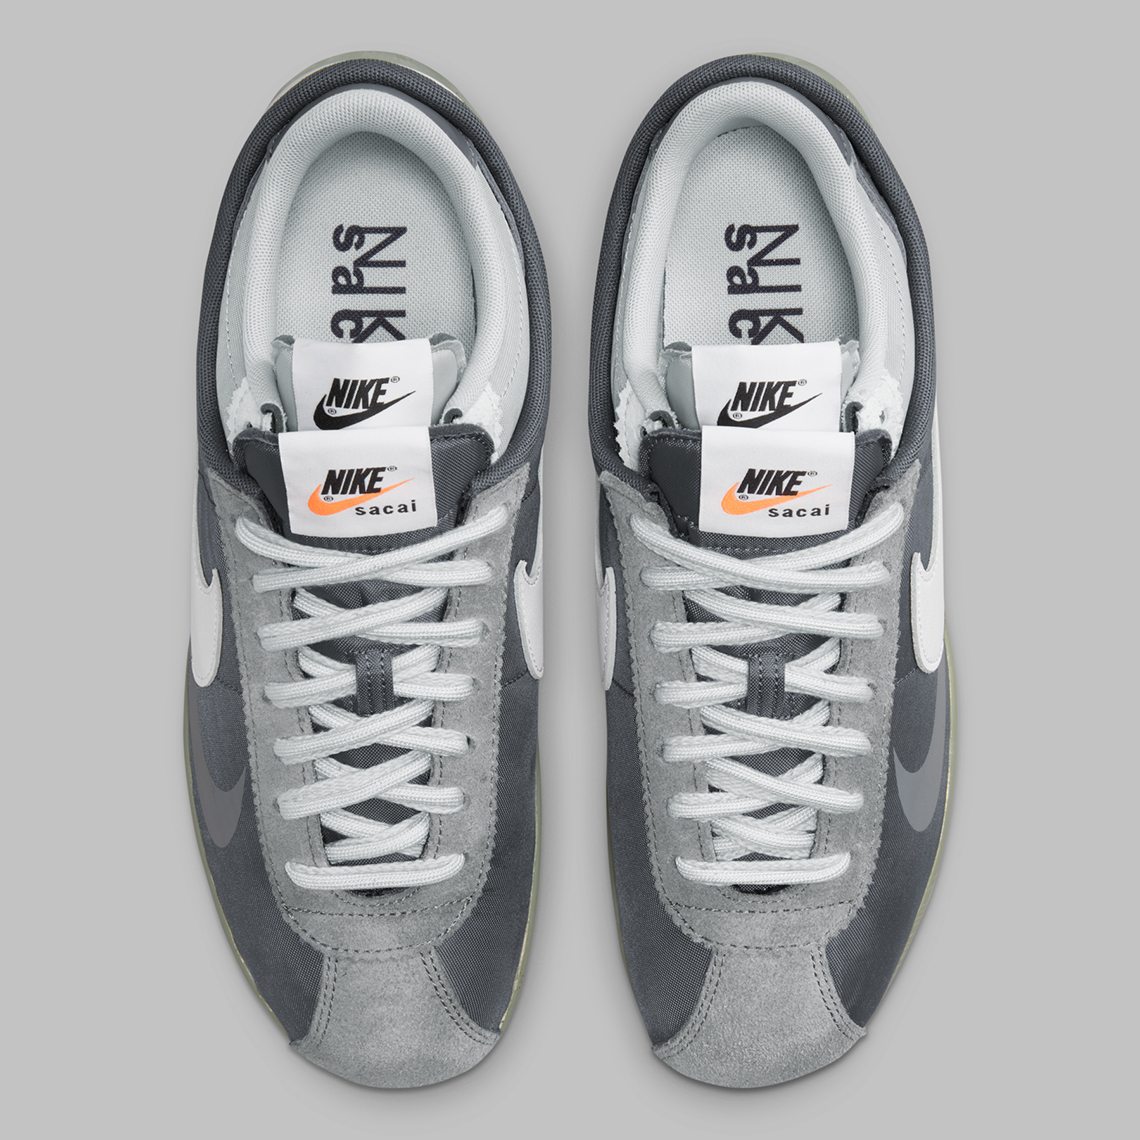 Nike Cortez Sacai Grey White Dq0581 001 4